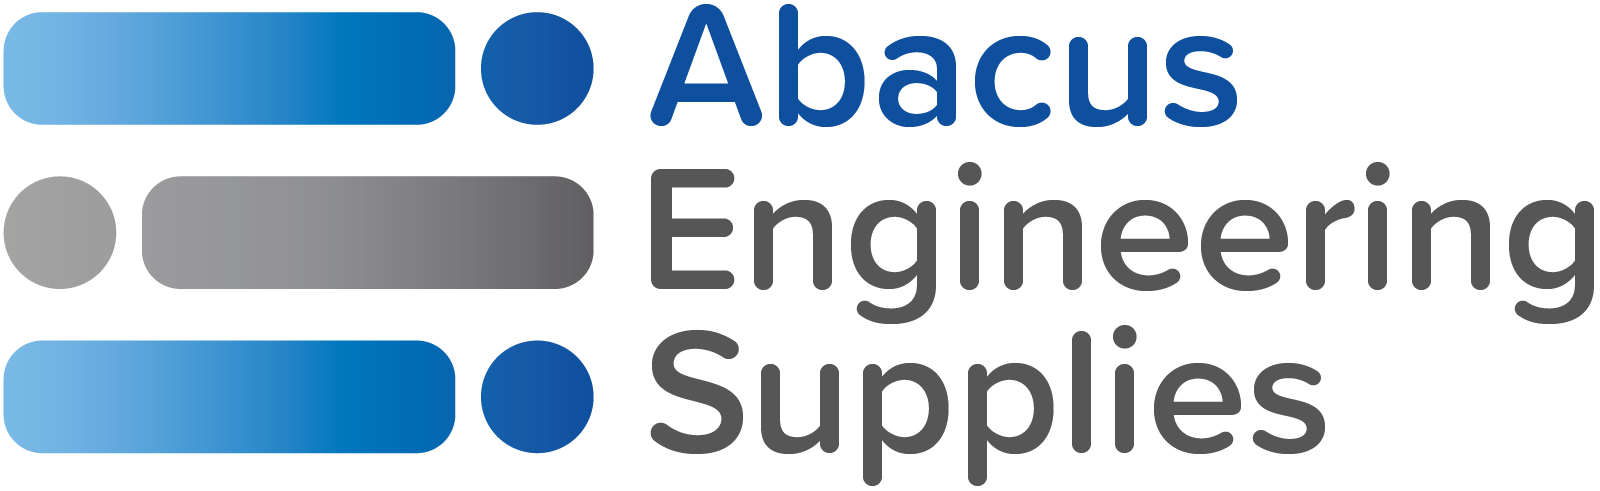 Abacus Engineering Supplies